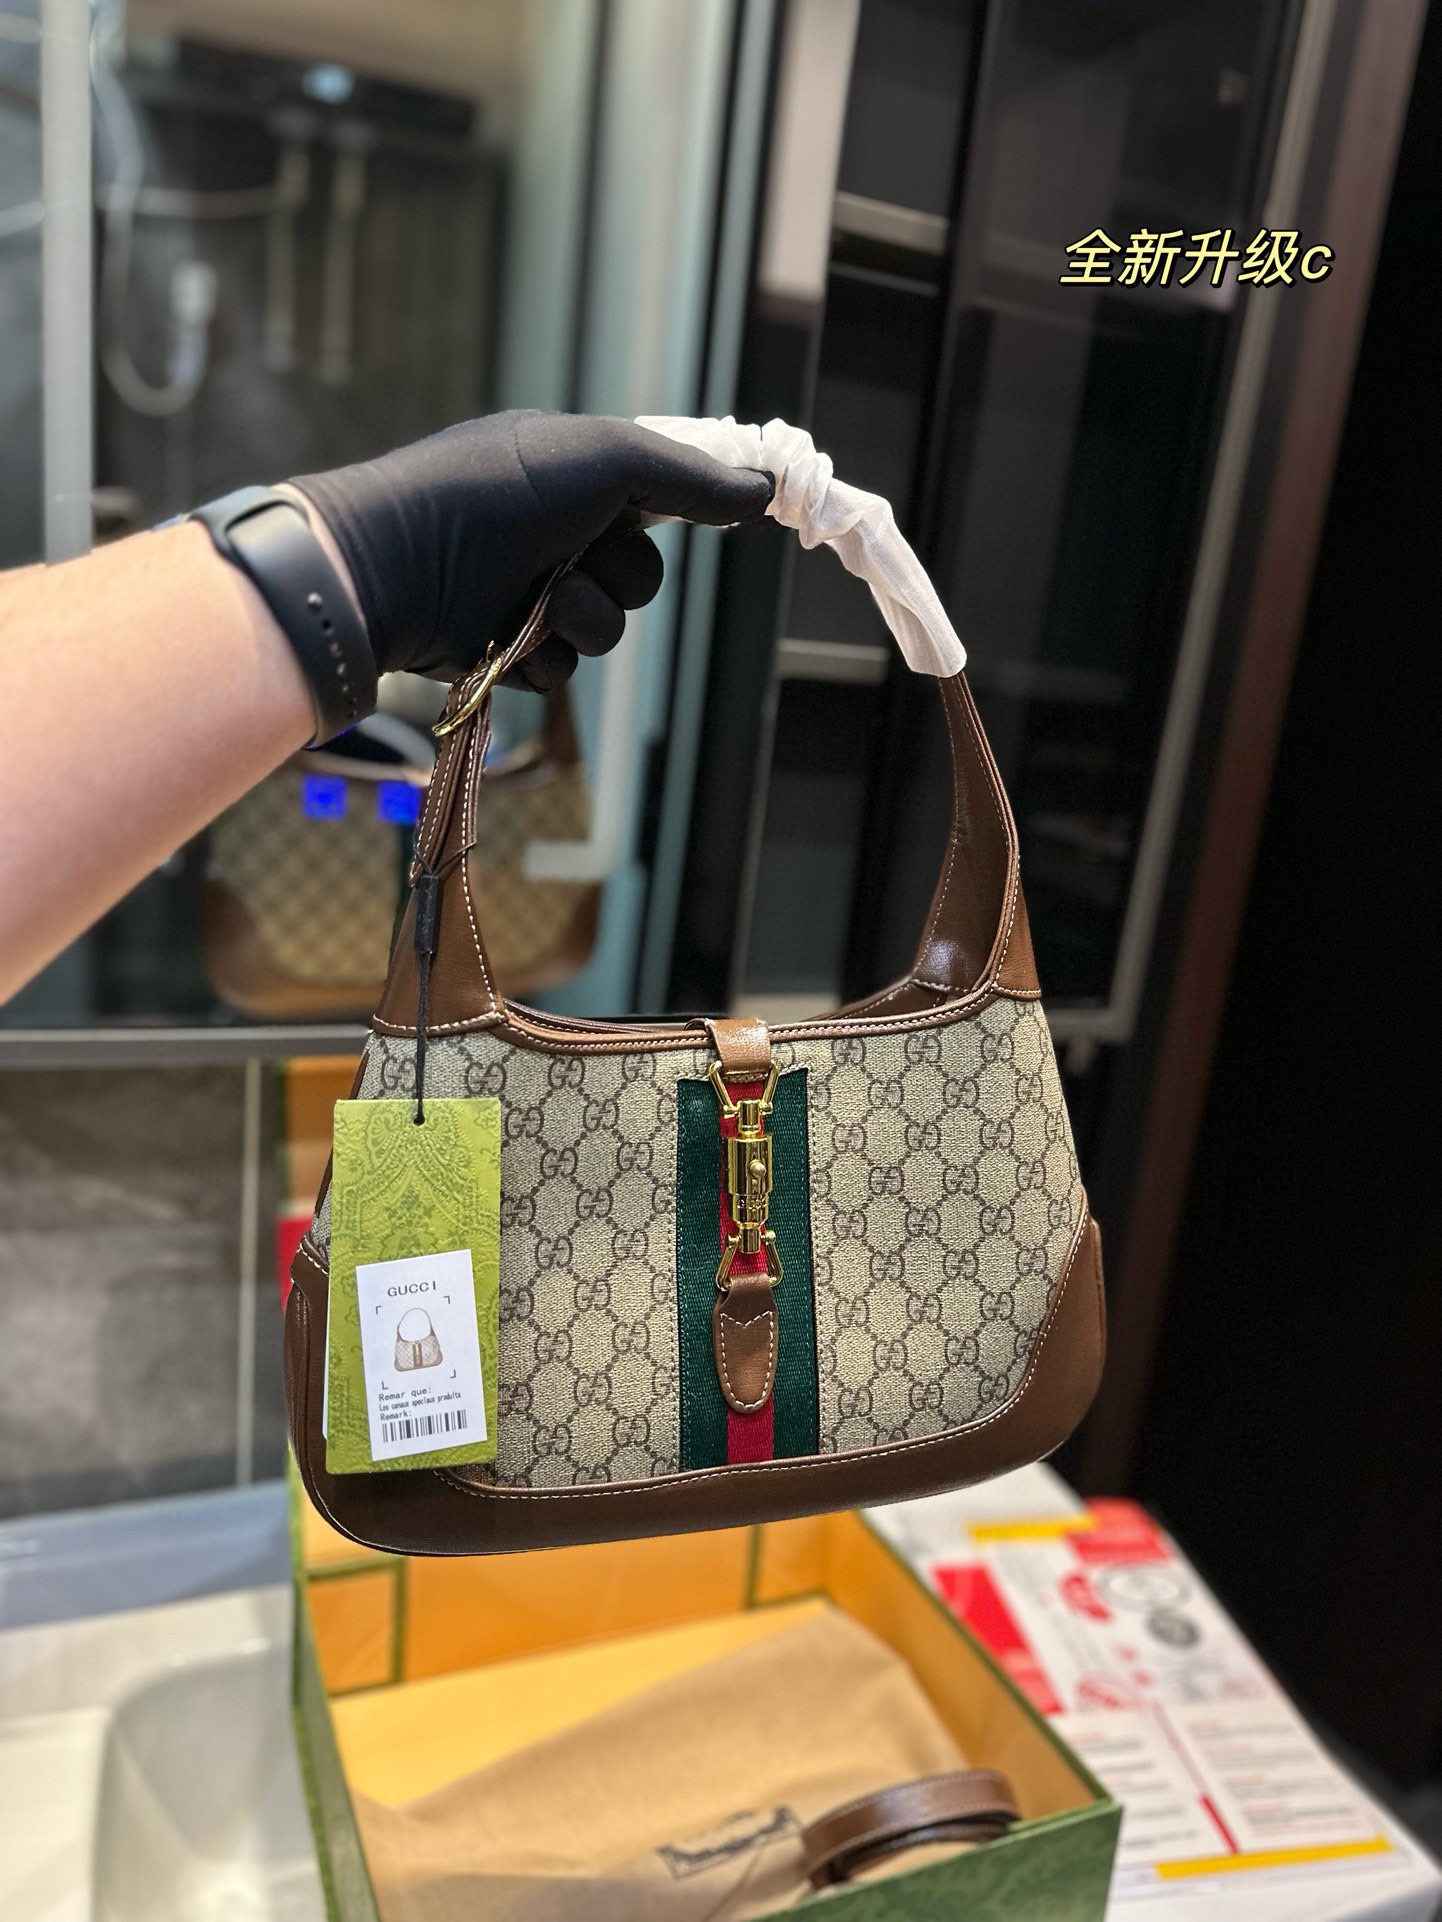 Gucci GG Supreme Handbags Crossbody & Shoulder Bags Underarm